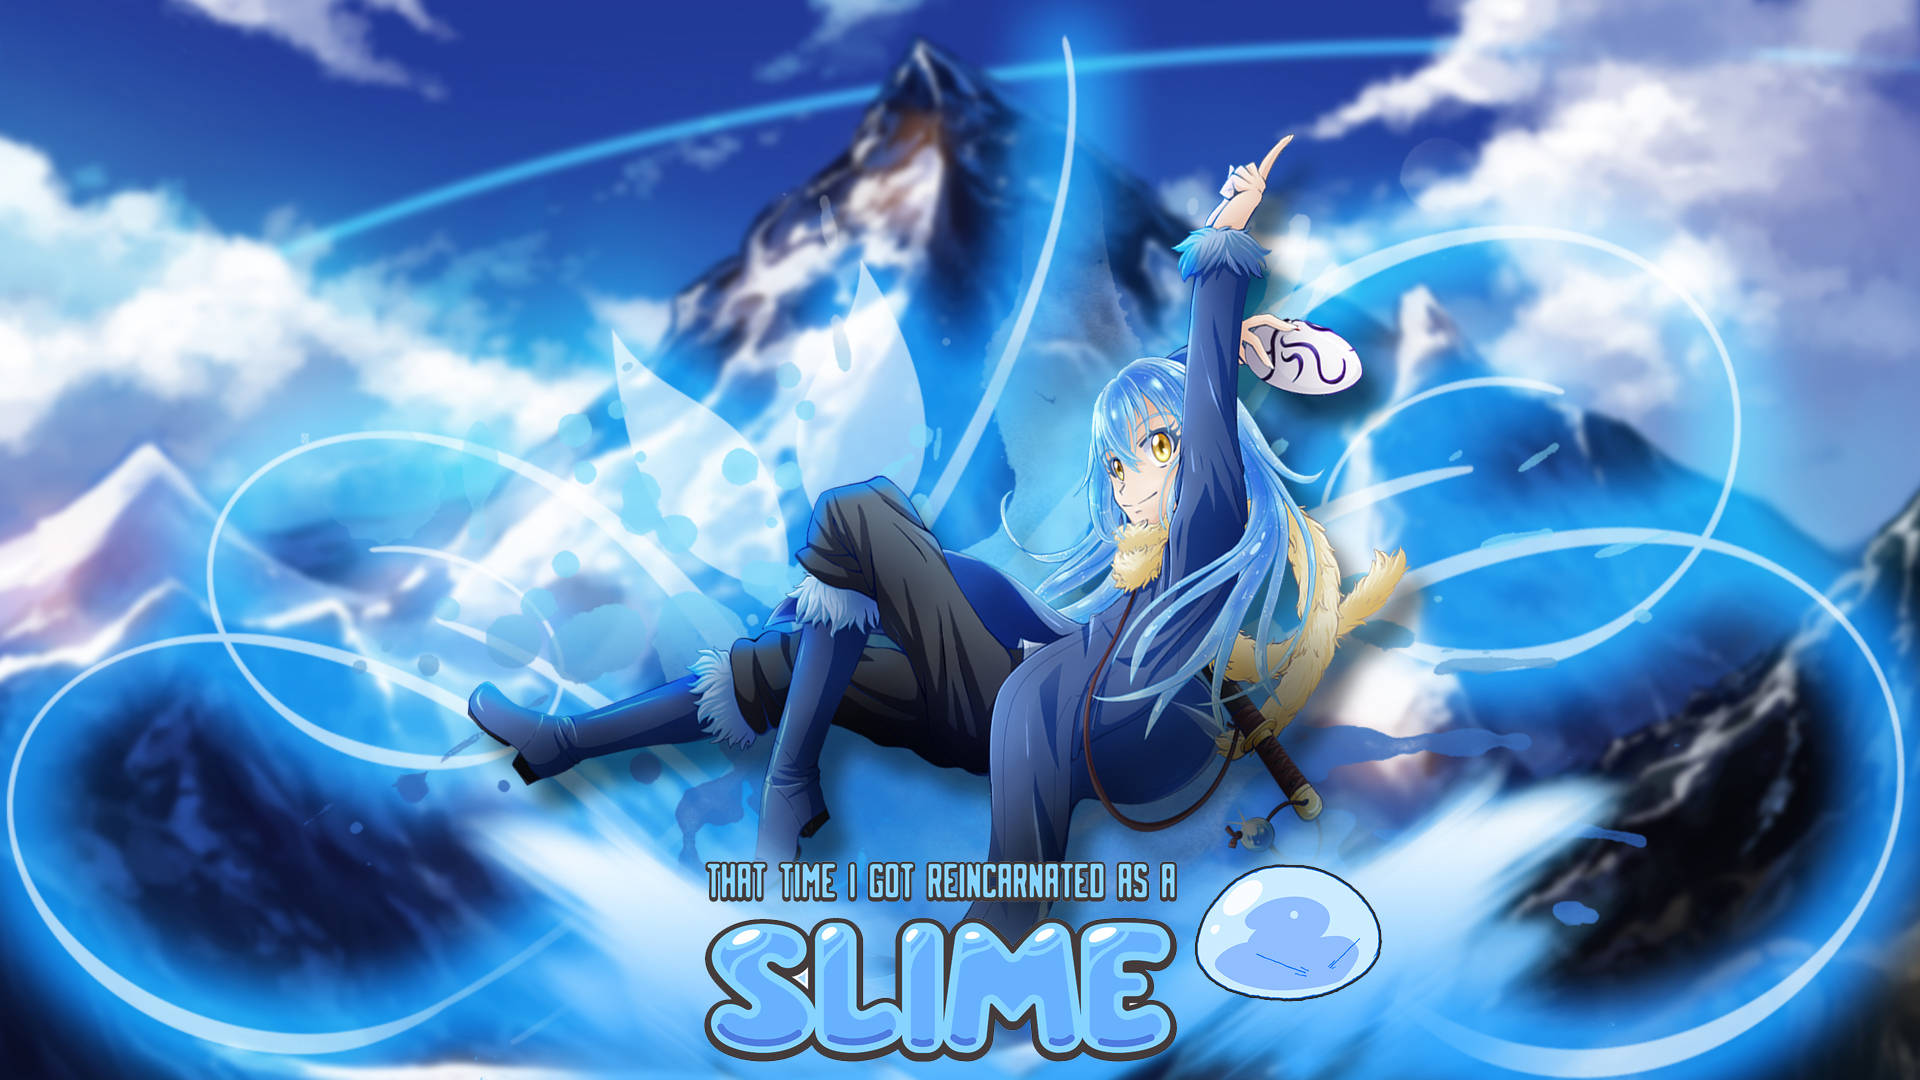 Nyd scener af Rimuru Tempest, den kvikke, underholdende hovedpersonen fra Slime Series på denne Anime Fanart Bakgrund. Wallpaper